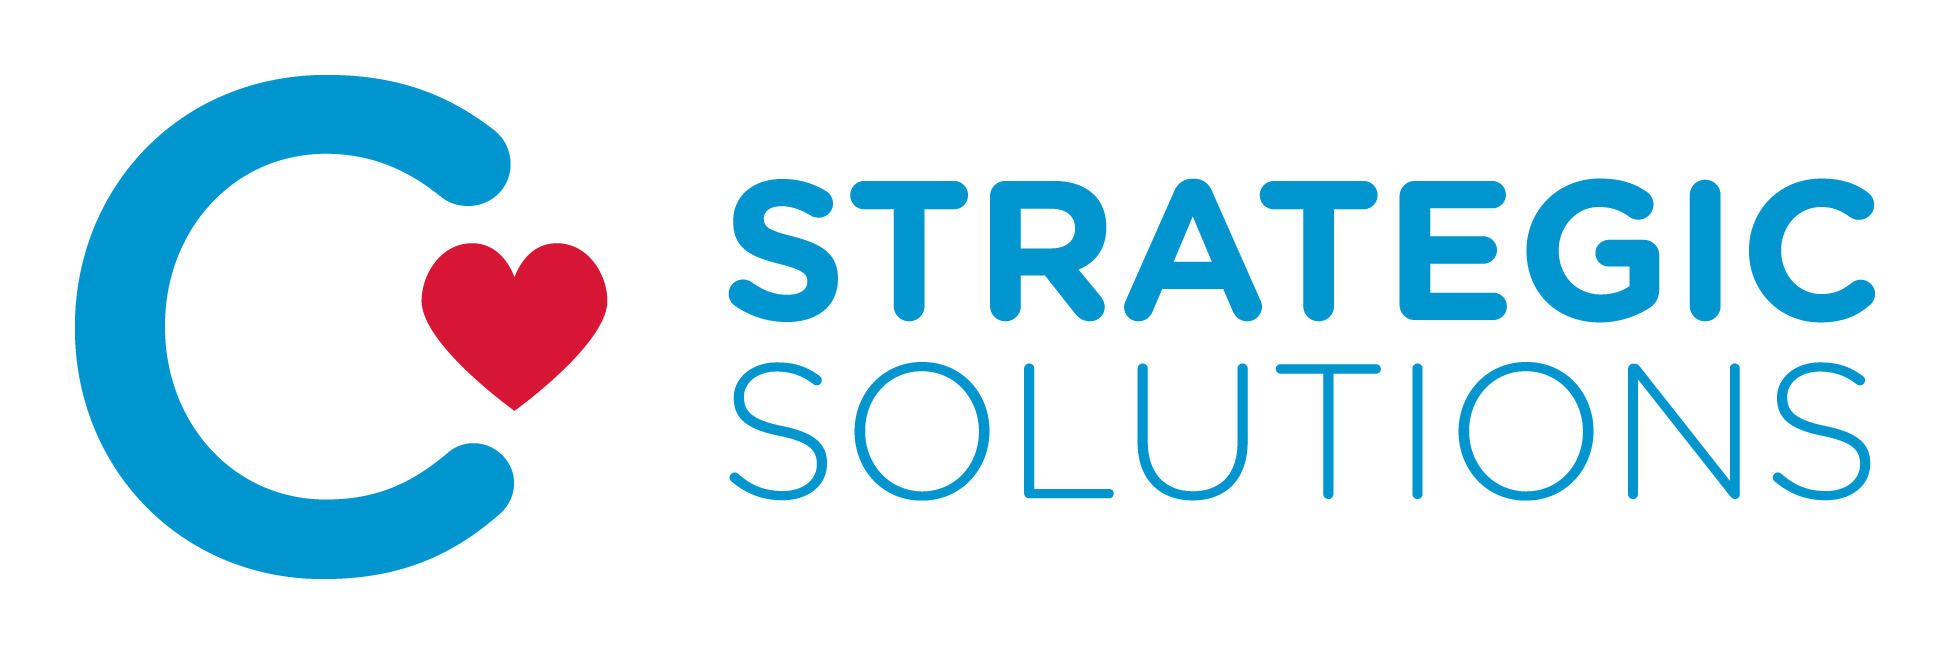 C Strategic Solutions